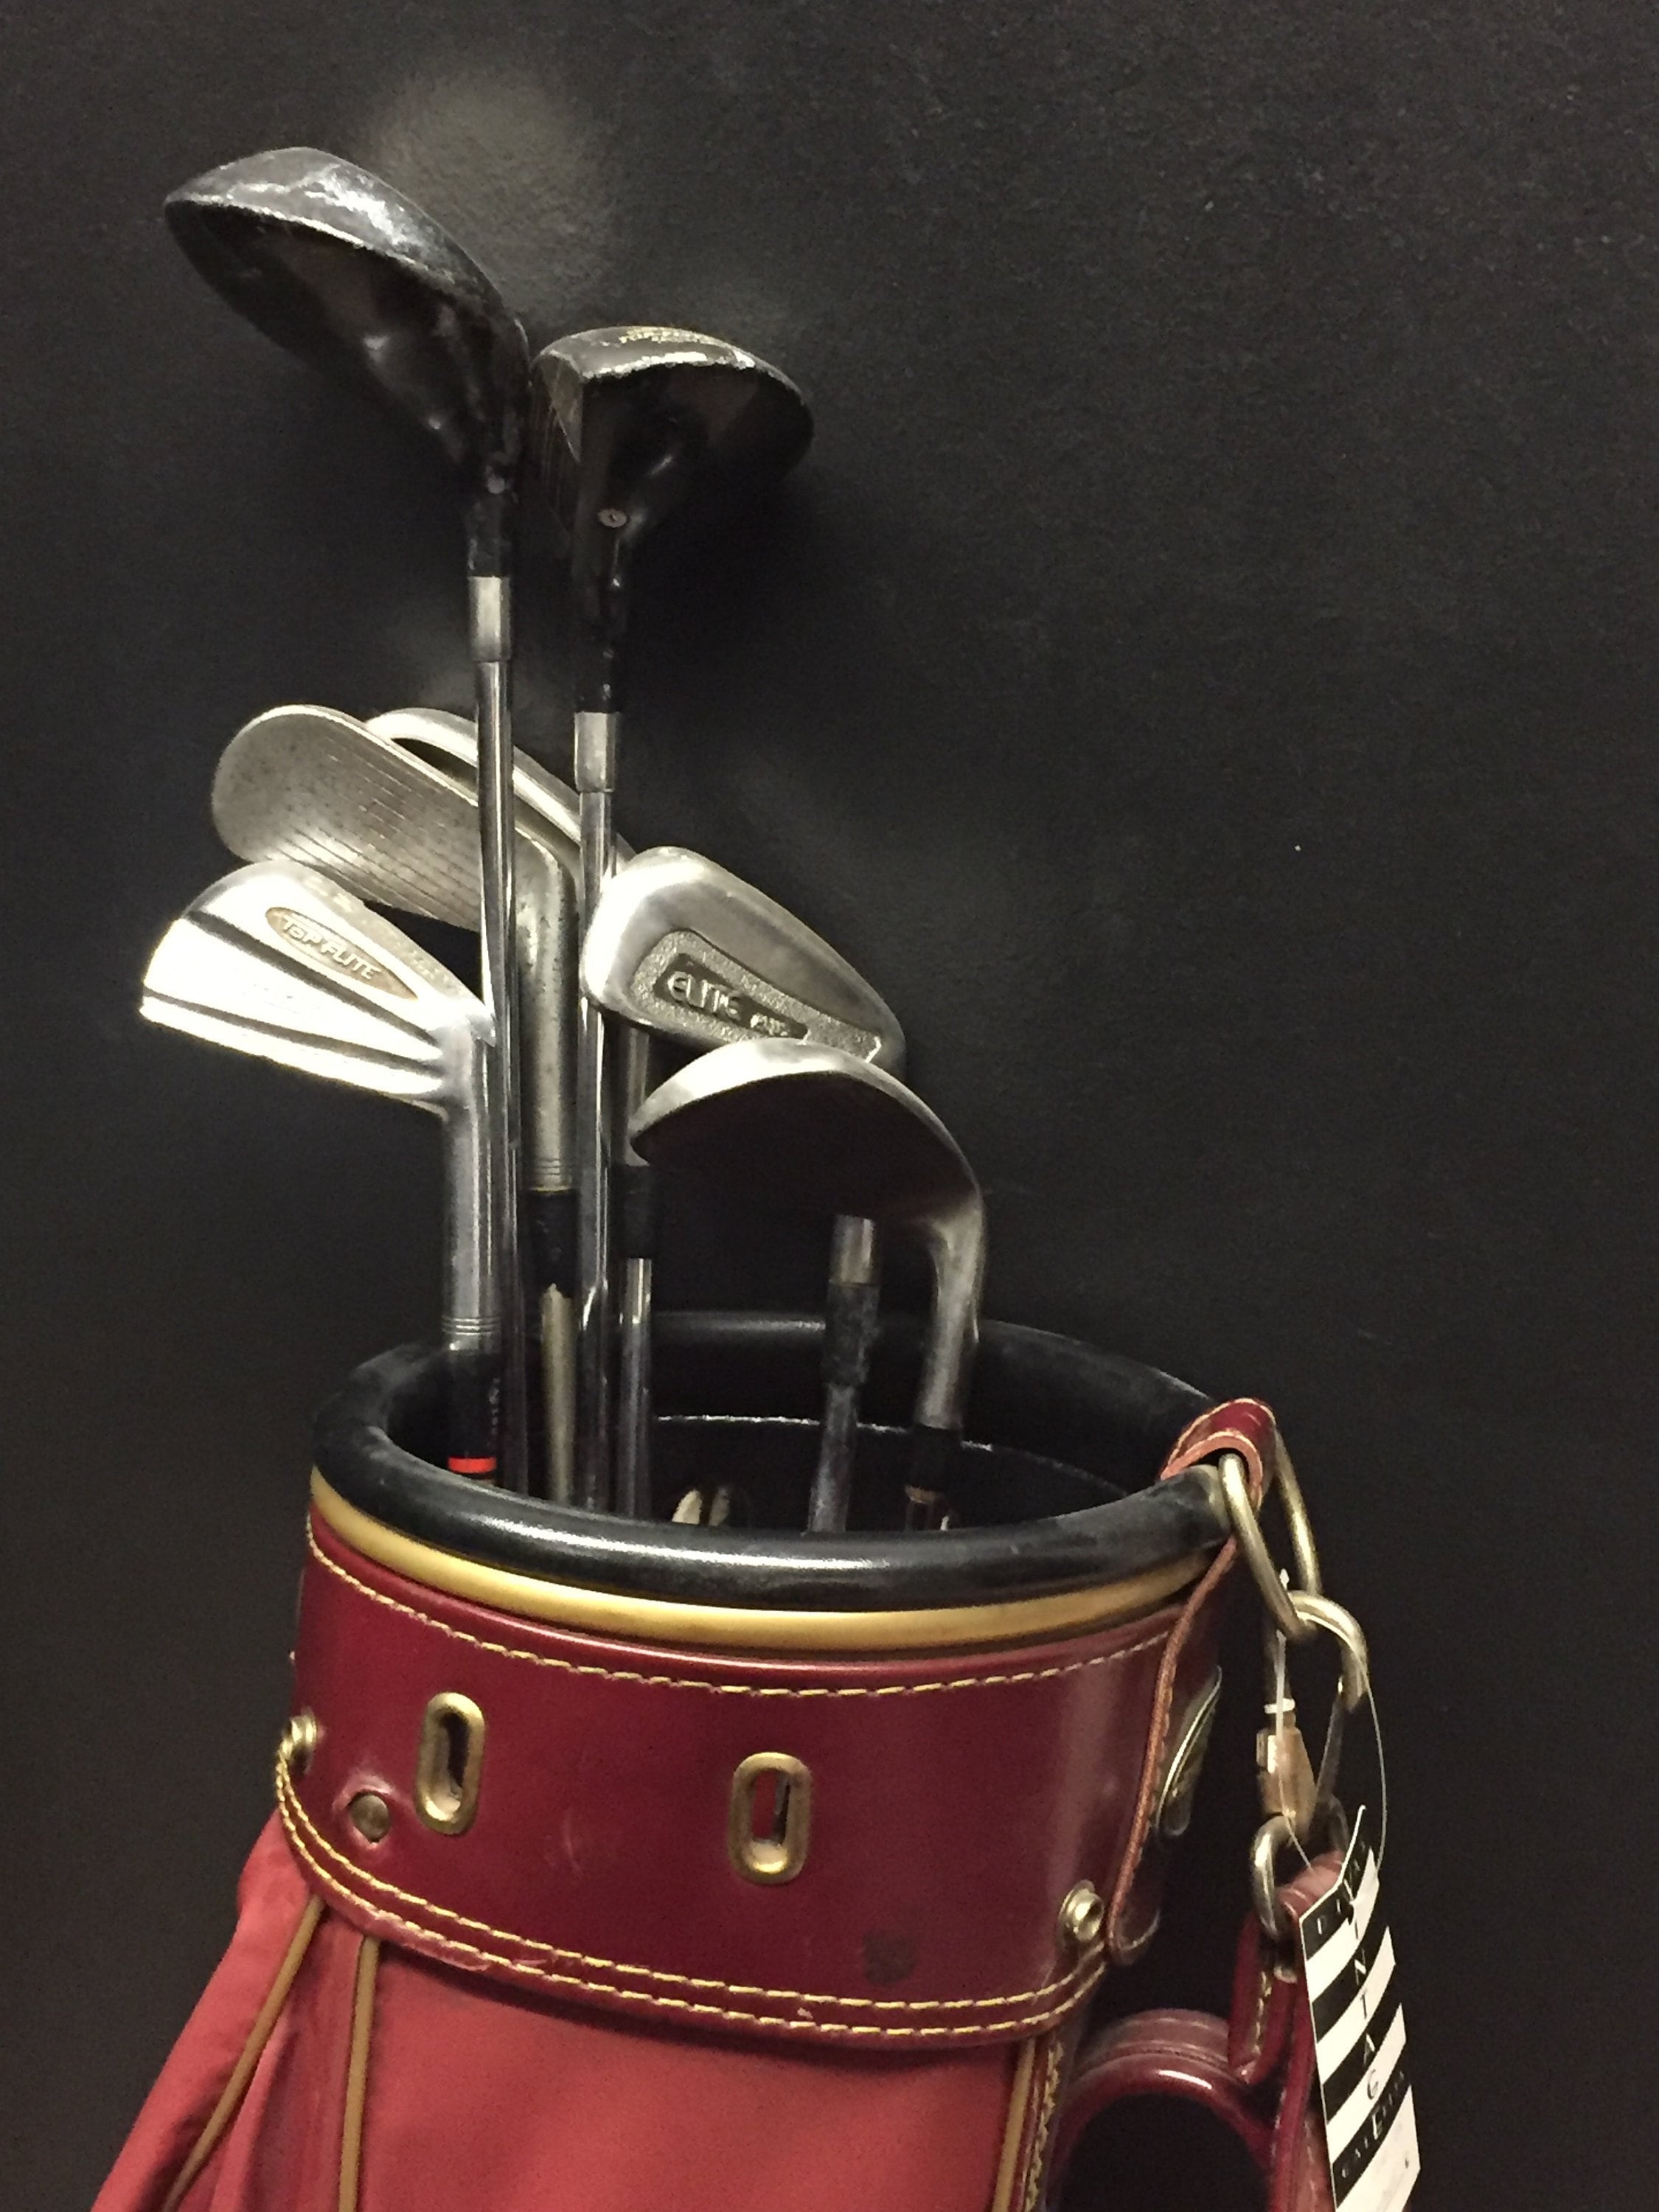 vintage golf bag